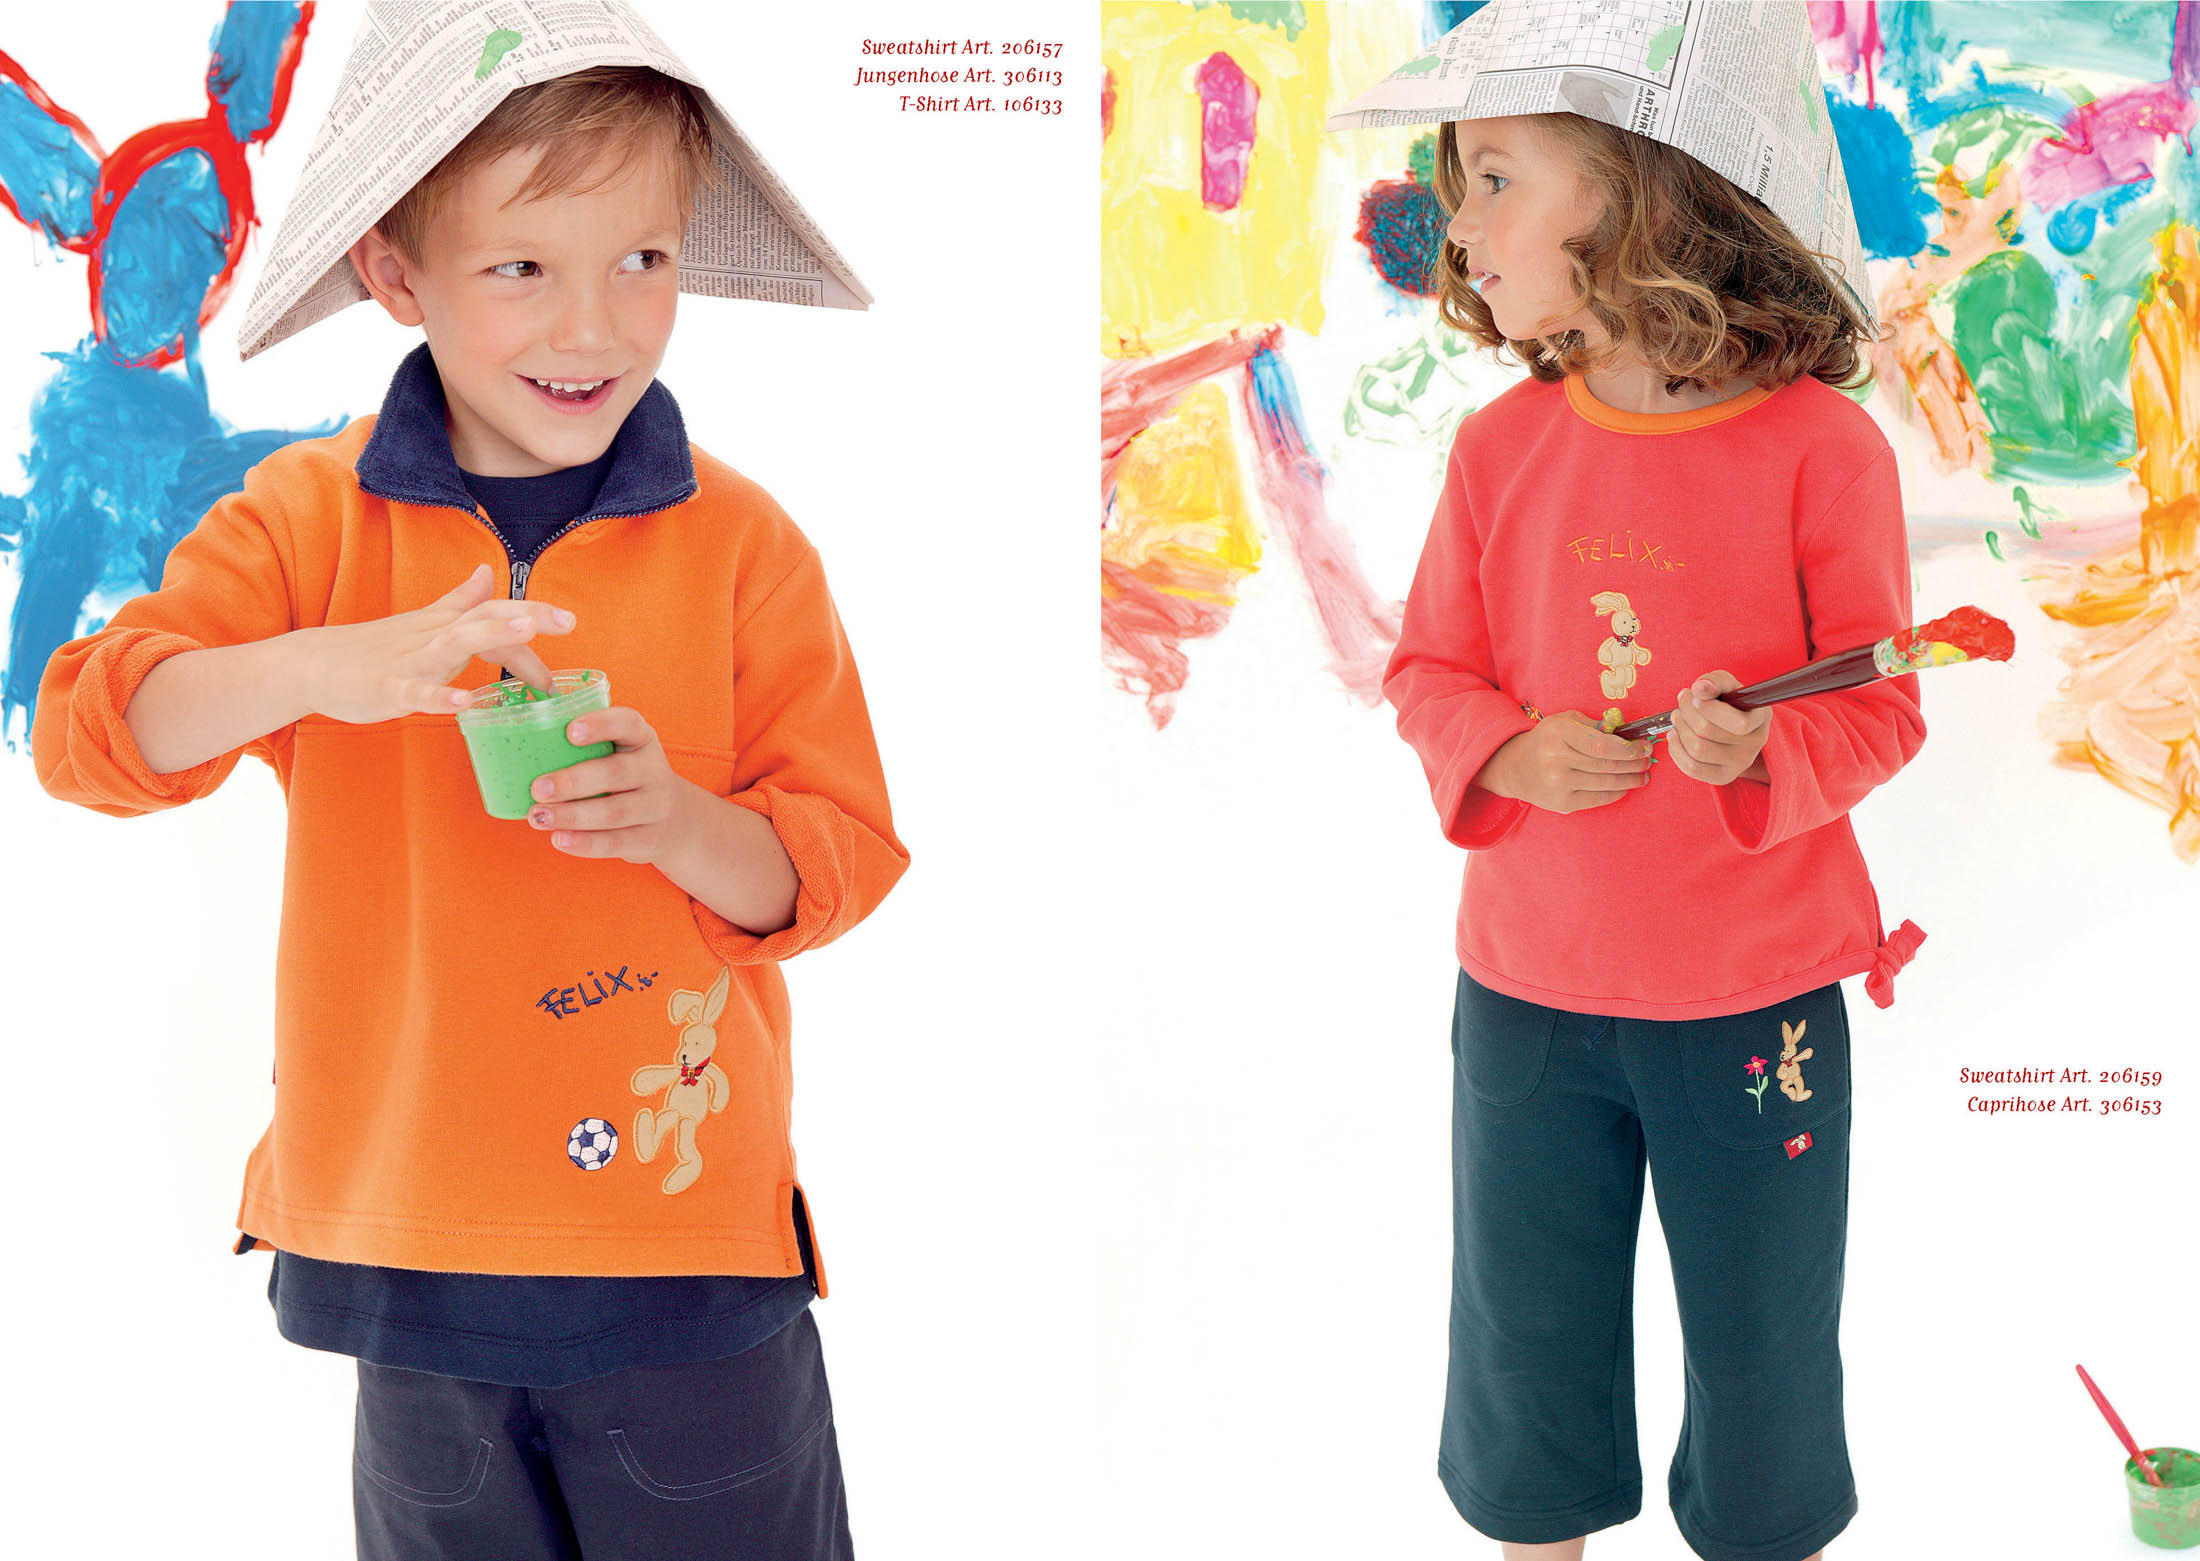 Zwei kleine Kinder in einem farbenfrohen Spielzimmer: Ein Junge in einem blauen Oberteil modelliert einen Papierhut und blickt dabei auf einen grünen Farbbehälter. Ein Mädchen in einem orangefarbenen Oberteil malt auf einer Leinwand und trägt ebenfalls einen Papierhut. © Fotografie Tomas Rodriguez